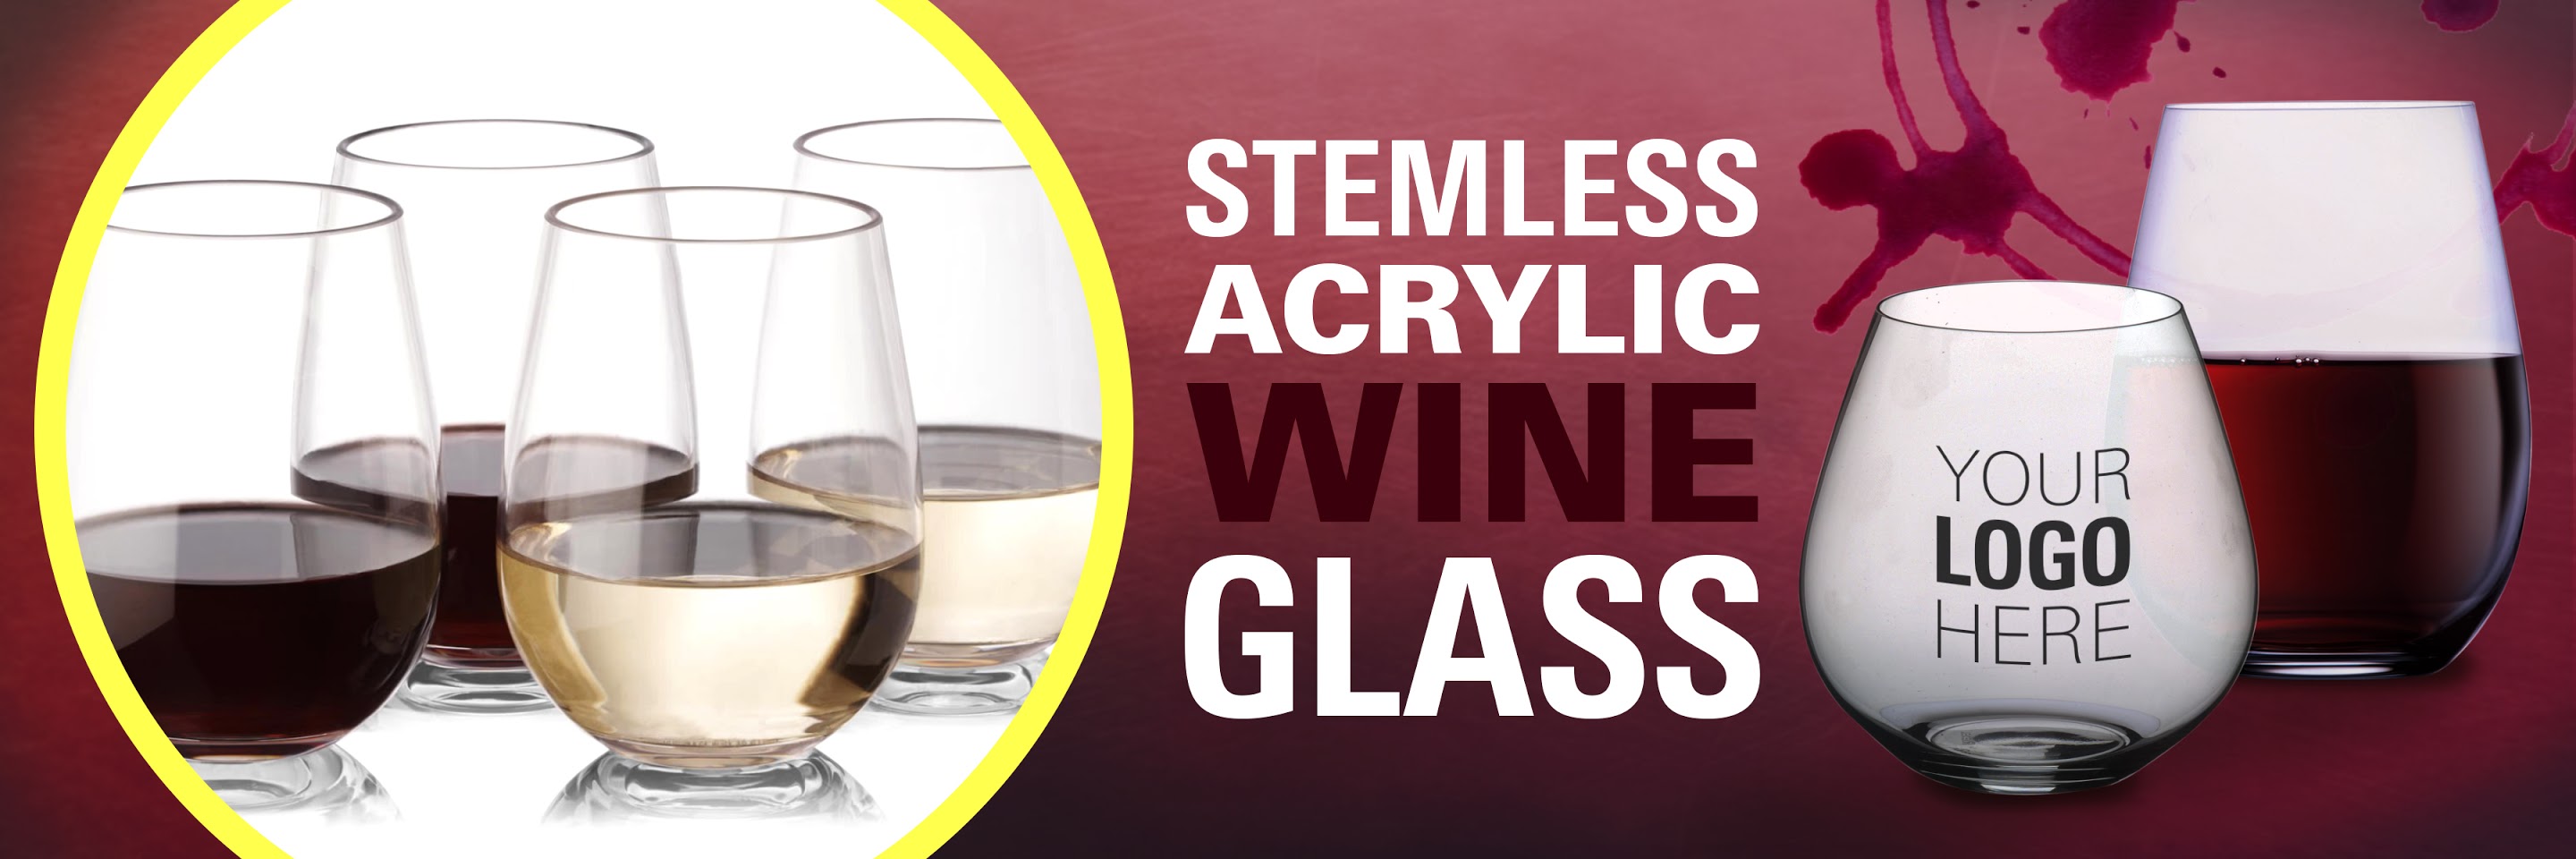 acrylic stemless wine glass